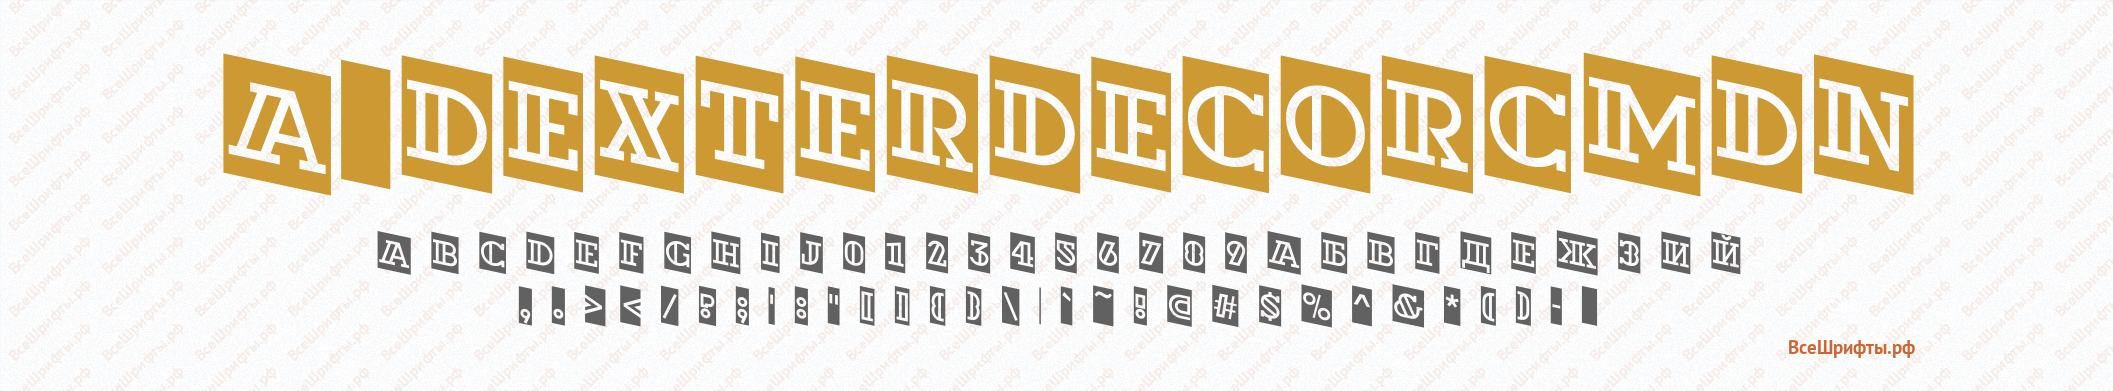 57 трендовых бесплатных шрифтов для типографики в 2020